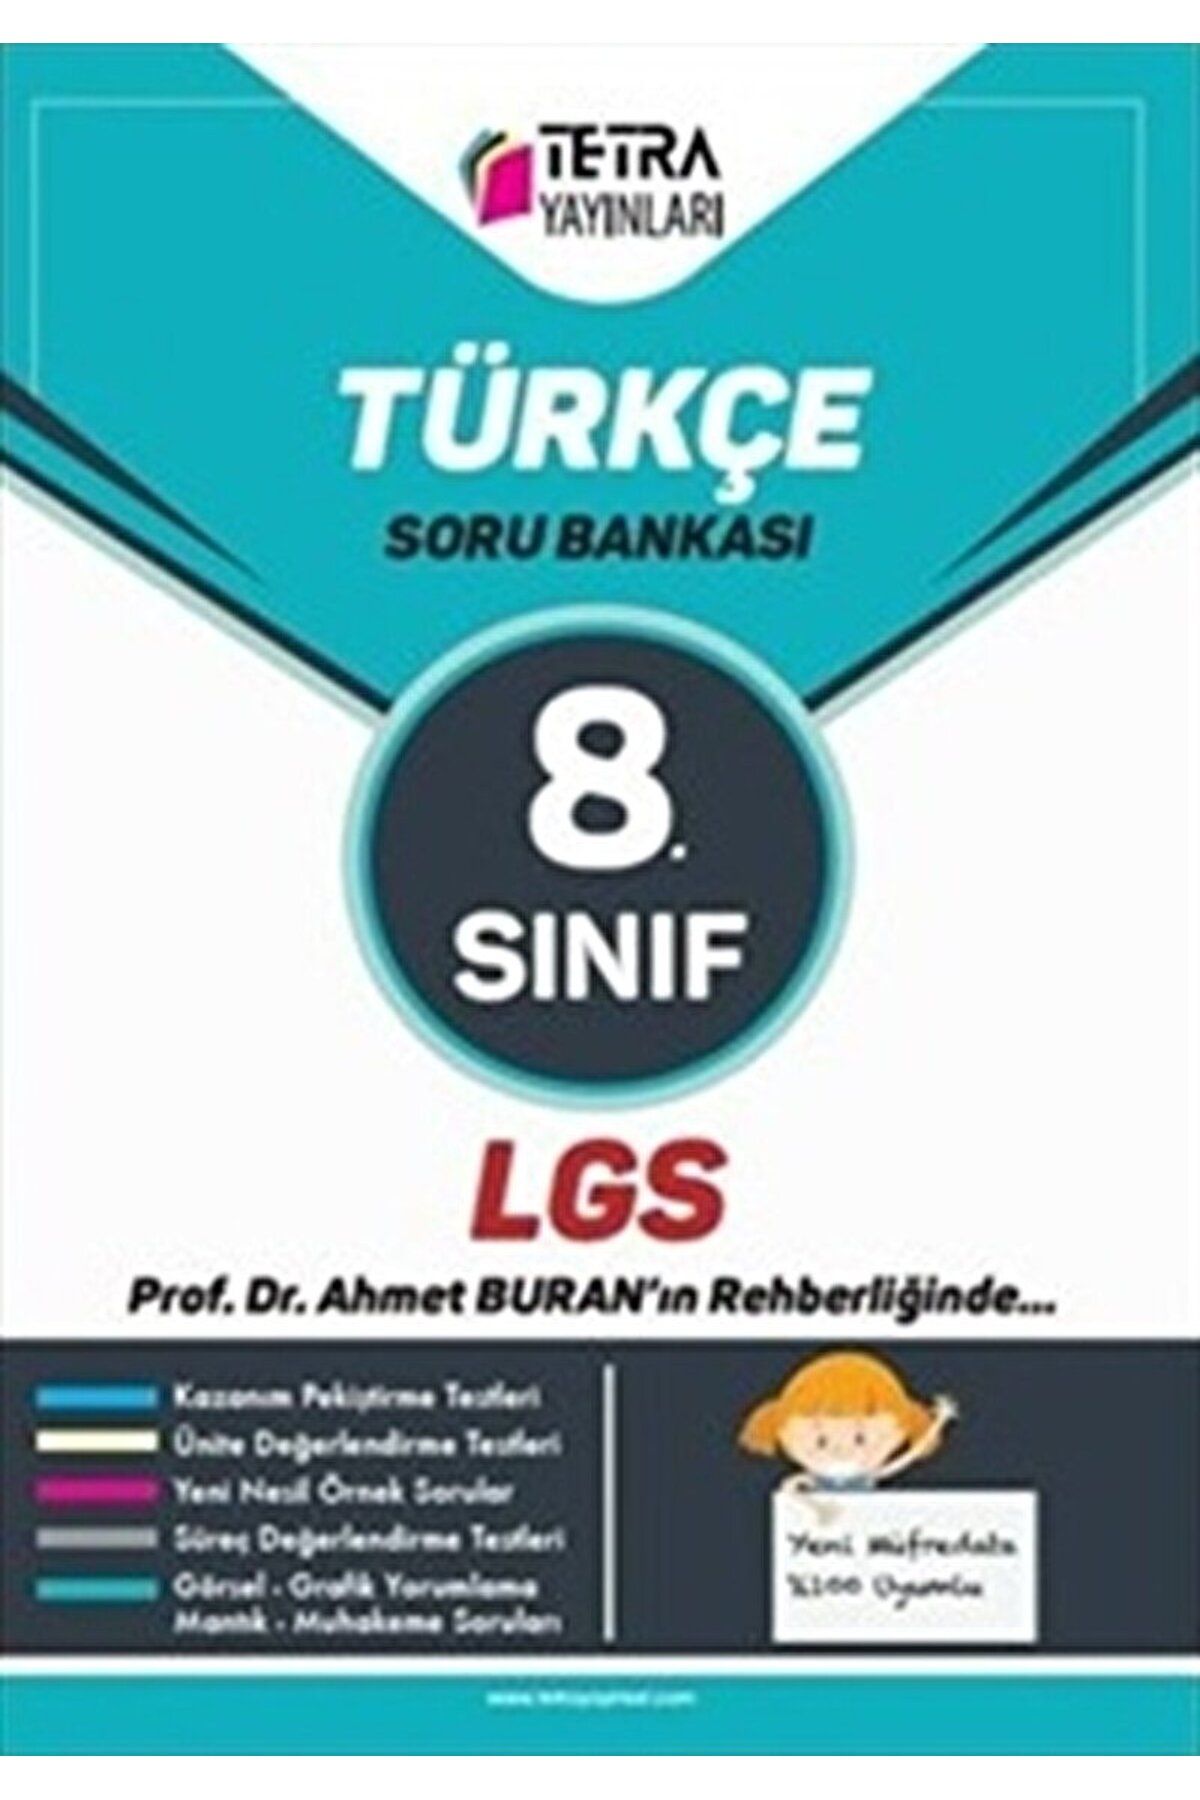 TETRA Yayınları 8. Sınıf LGS Türkçe Soru Bankası / Adem Kurum / Tetra Yayınları / 9786056999208